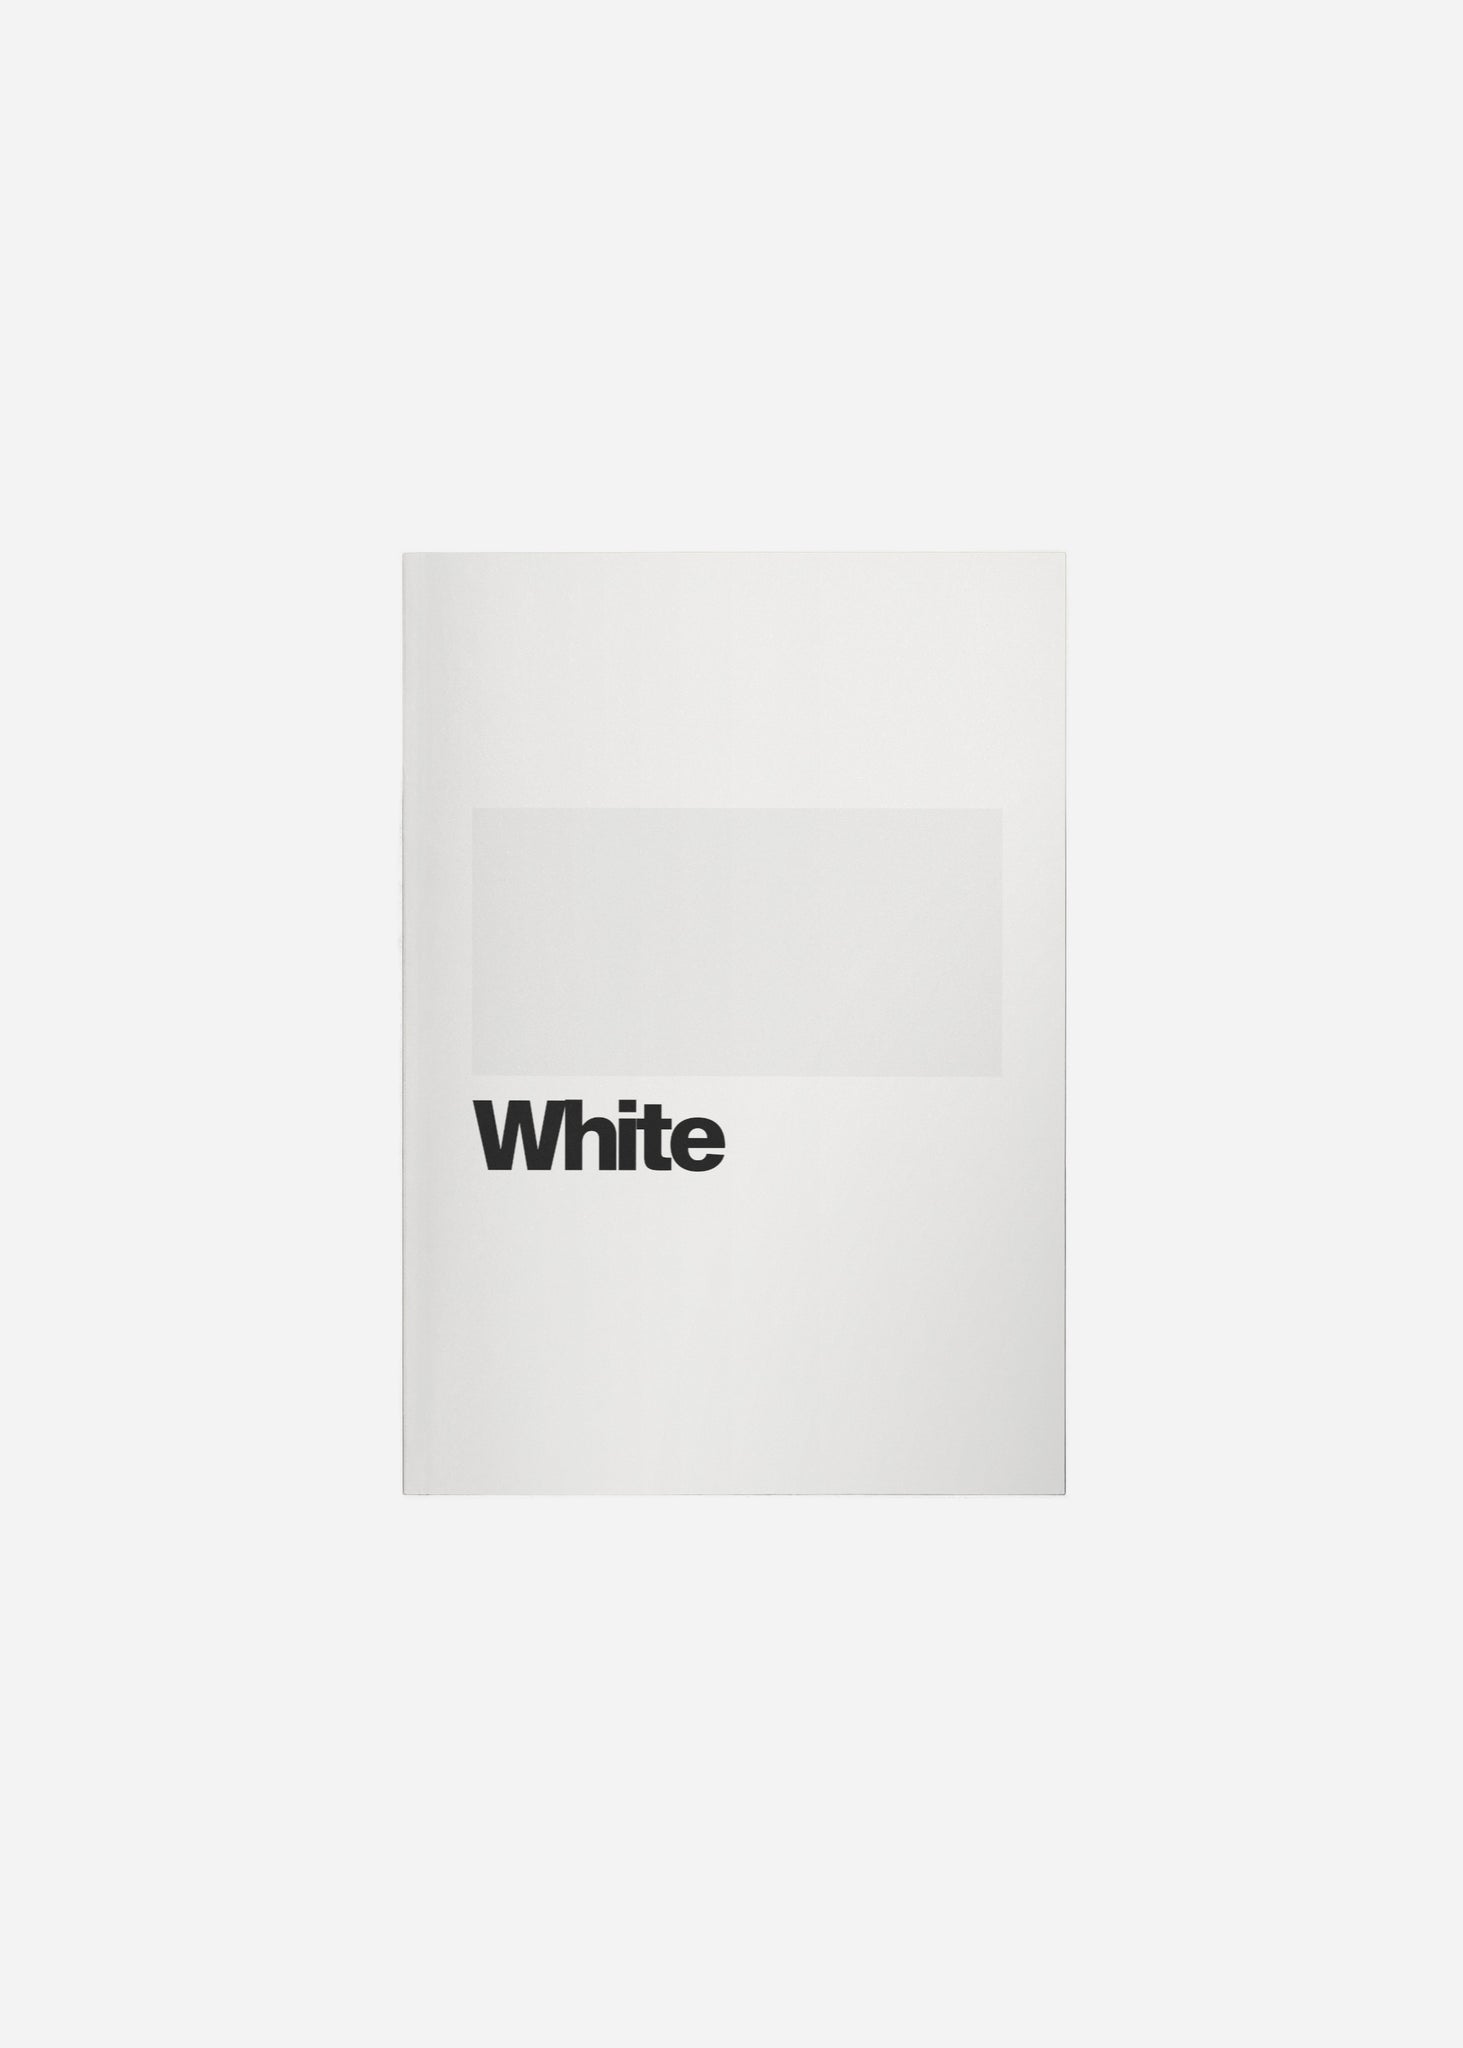 white Fine Art Print